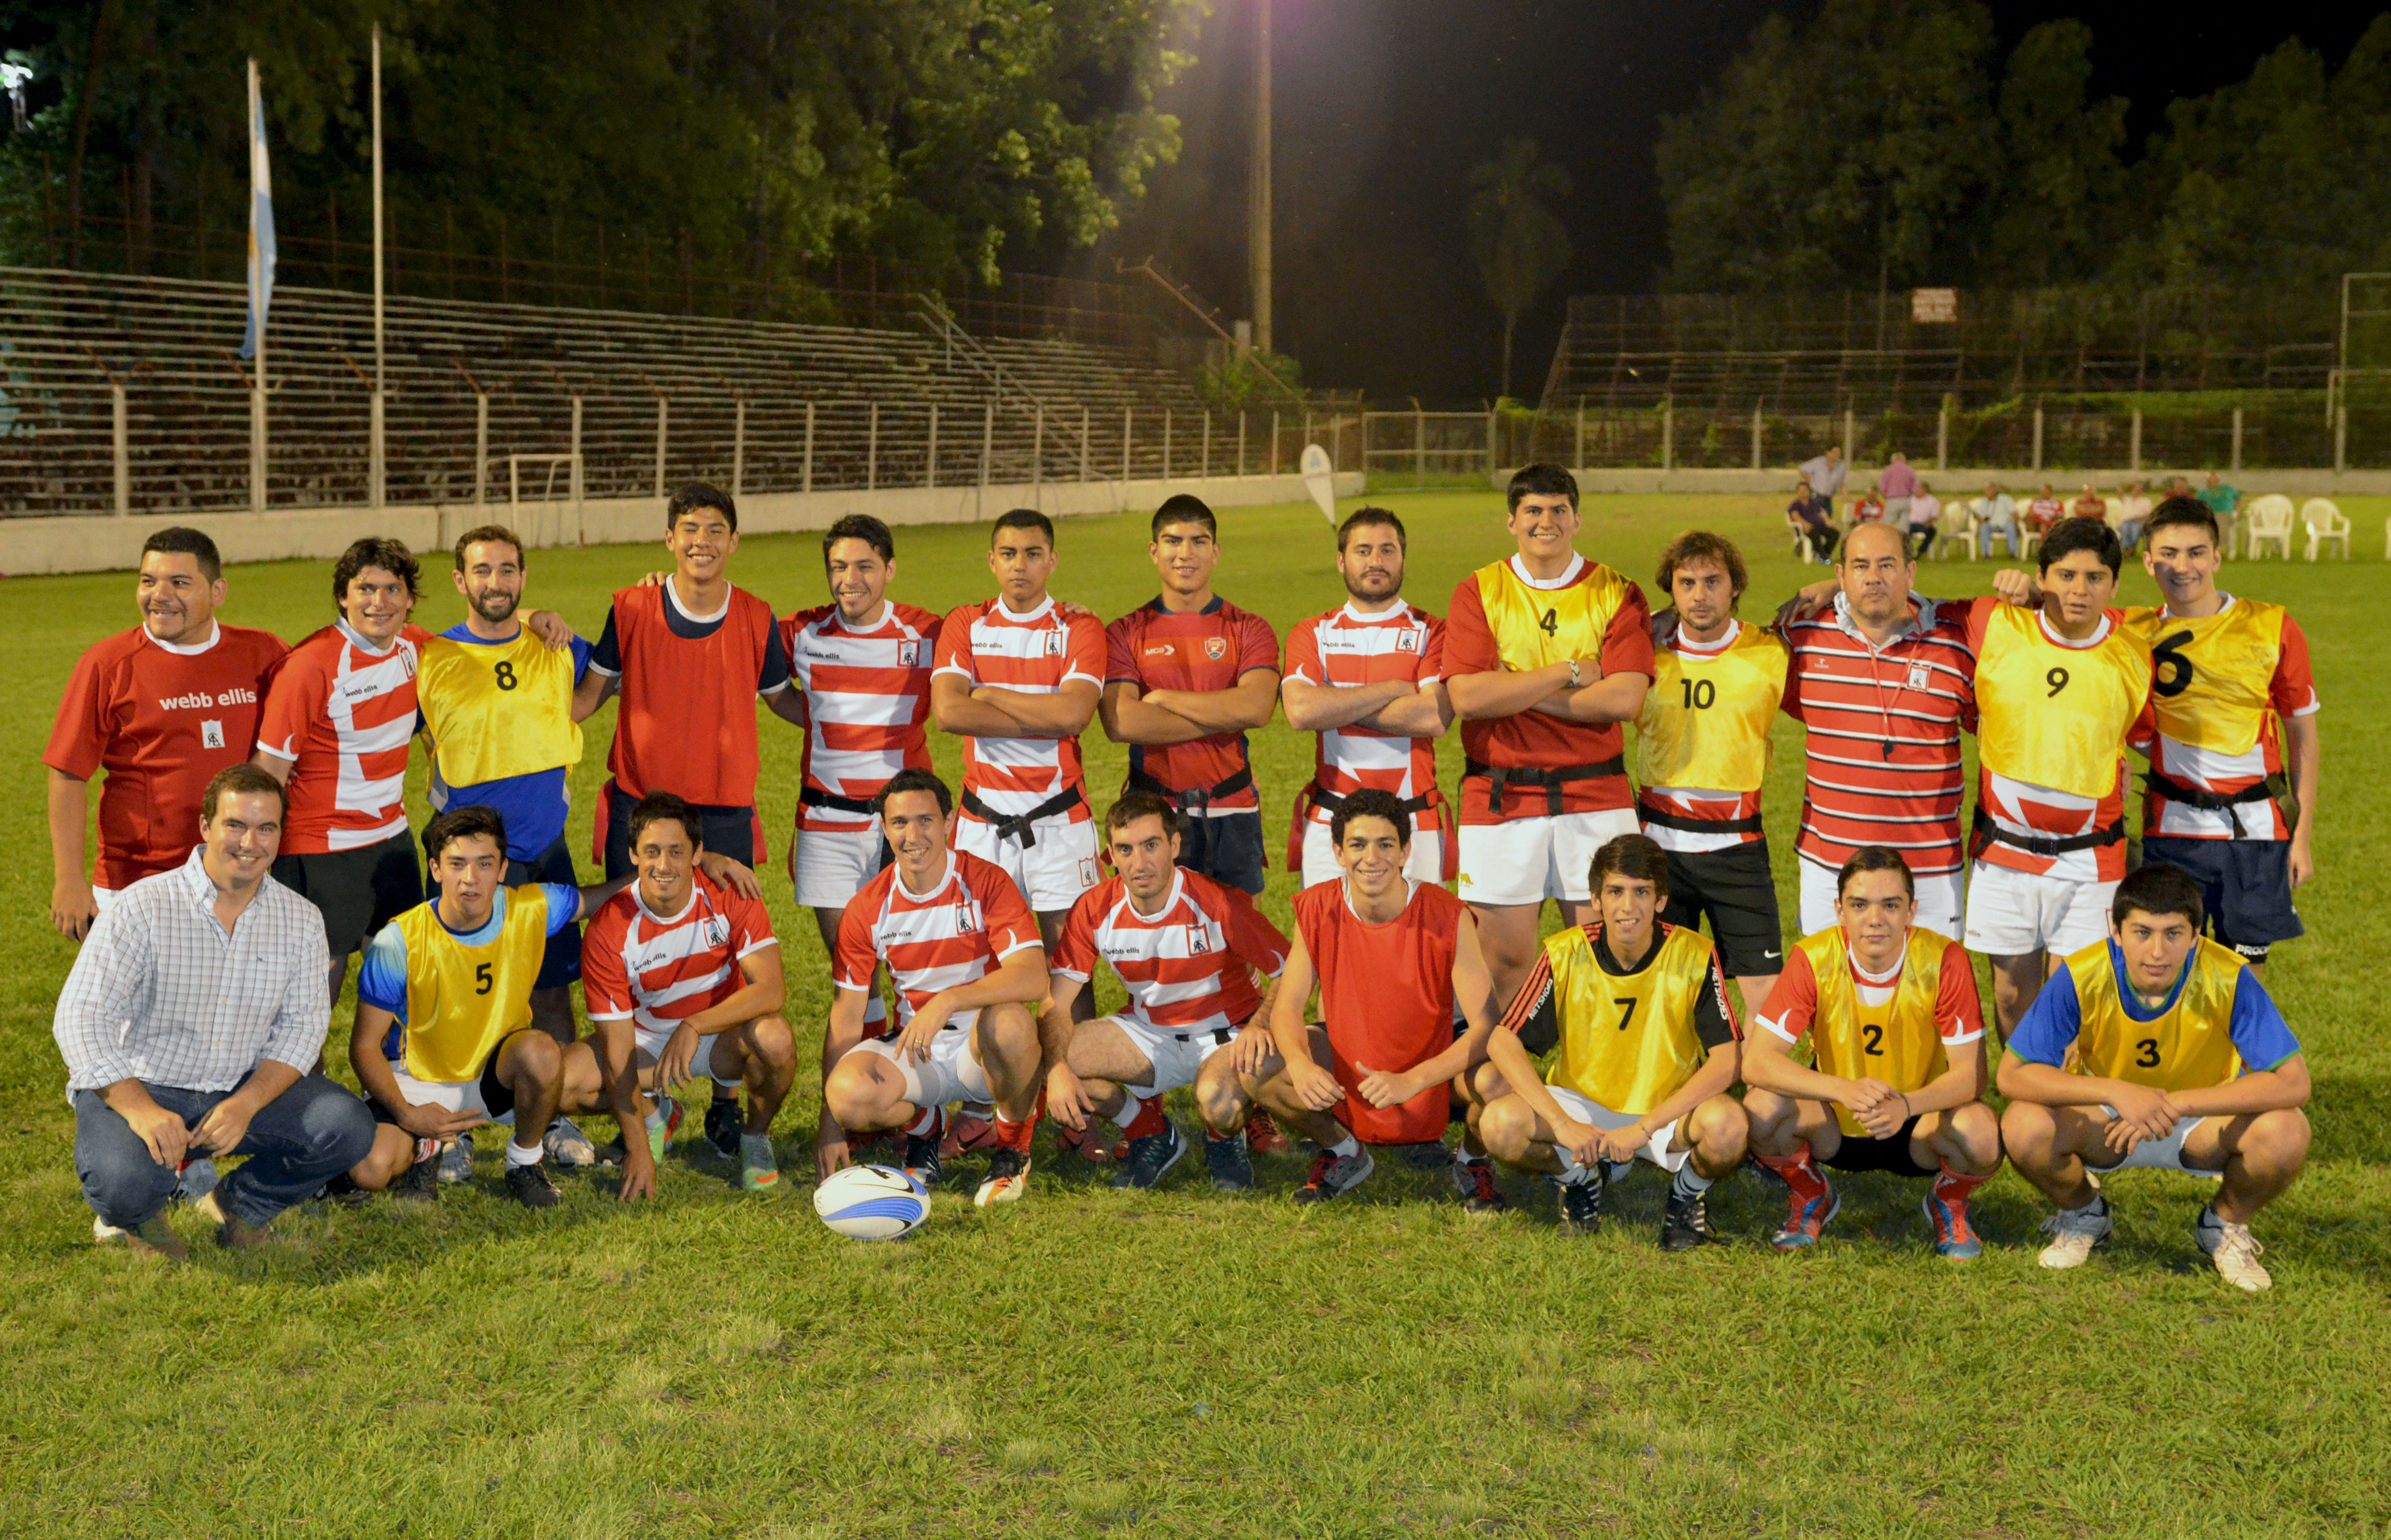  Amistoso de rugby se jugó en el Club Atlético Ledesma